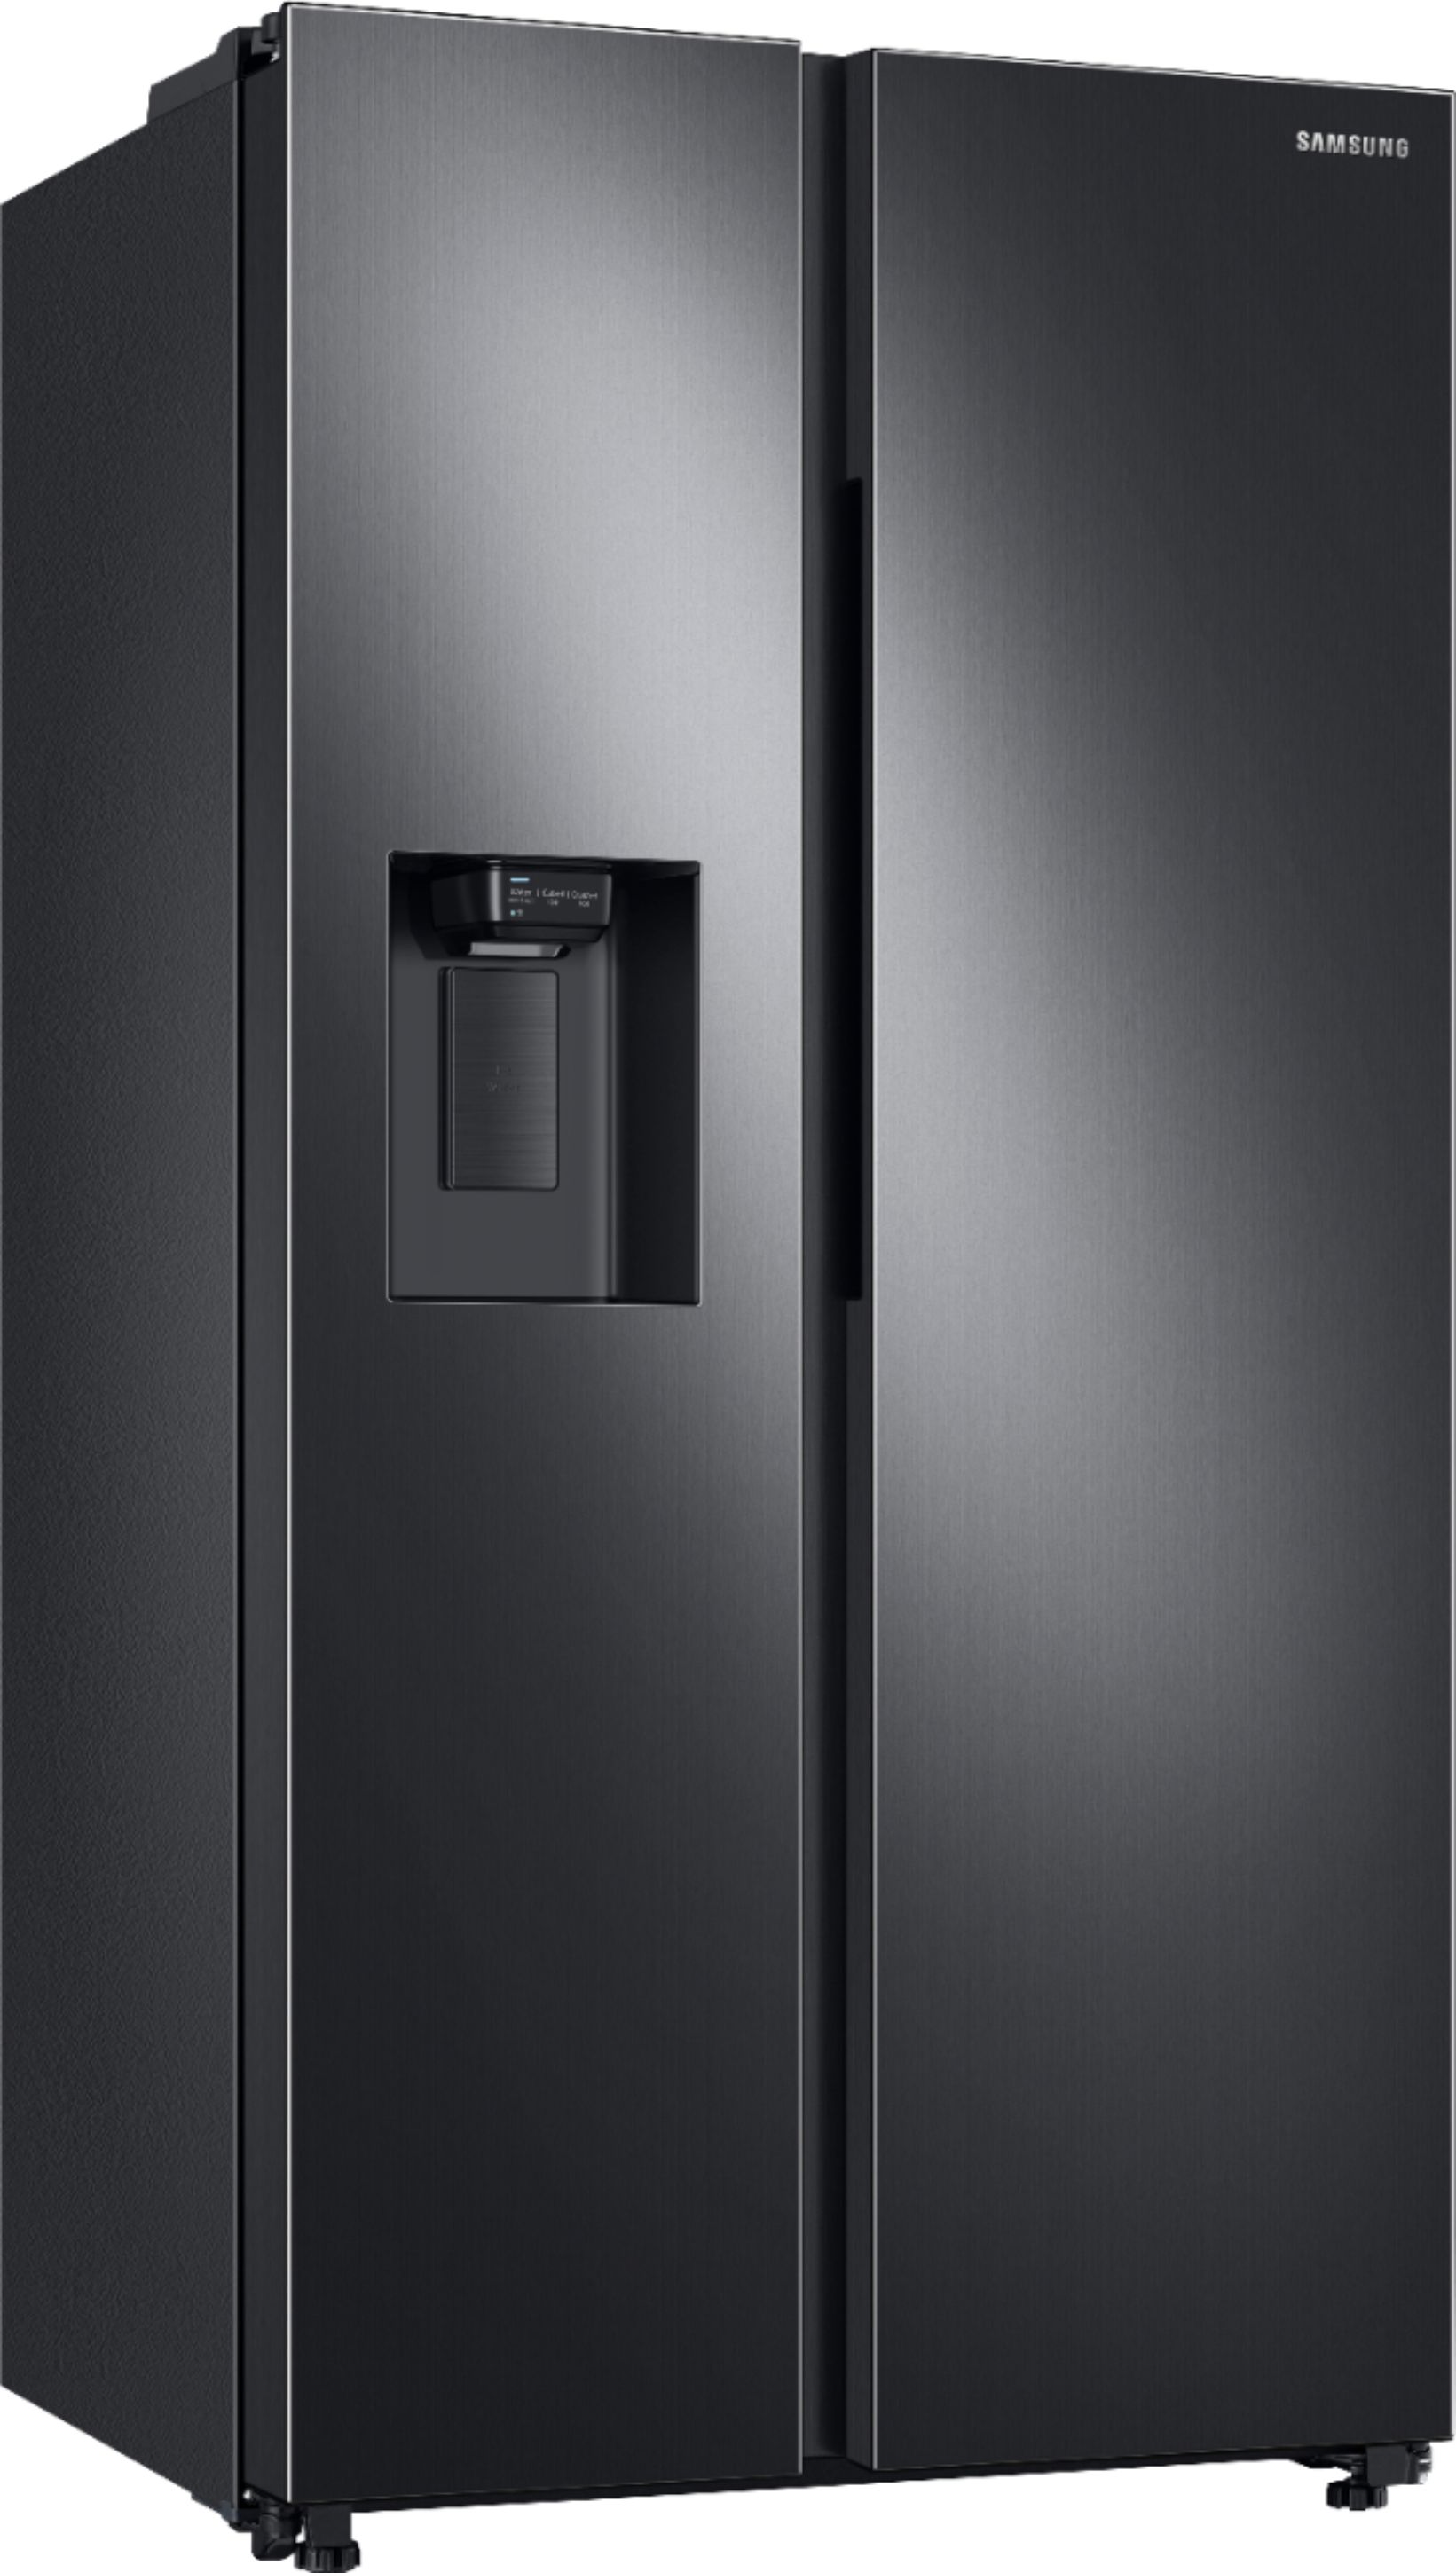 Angle View: Samsung - 22 cu. ft. Smart 3-Door French Door Refrigerator - Black stainless steel